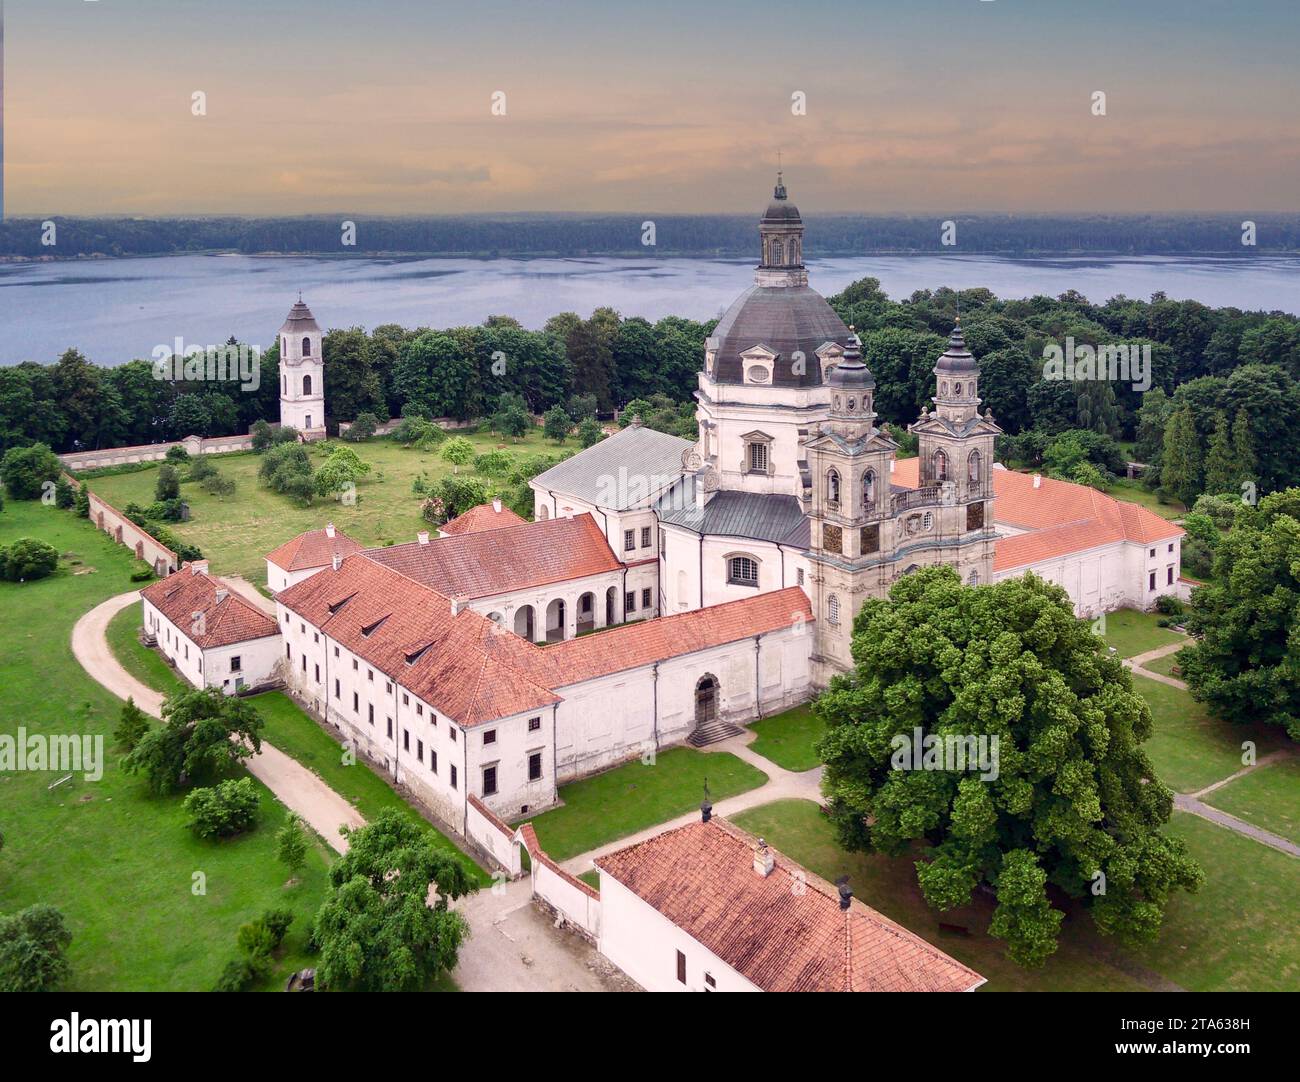 Kaunas, Lithuania: Pažaislis monastery and church Stock Photo